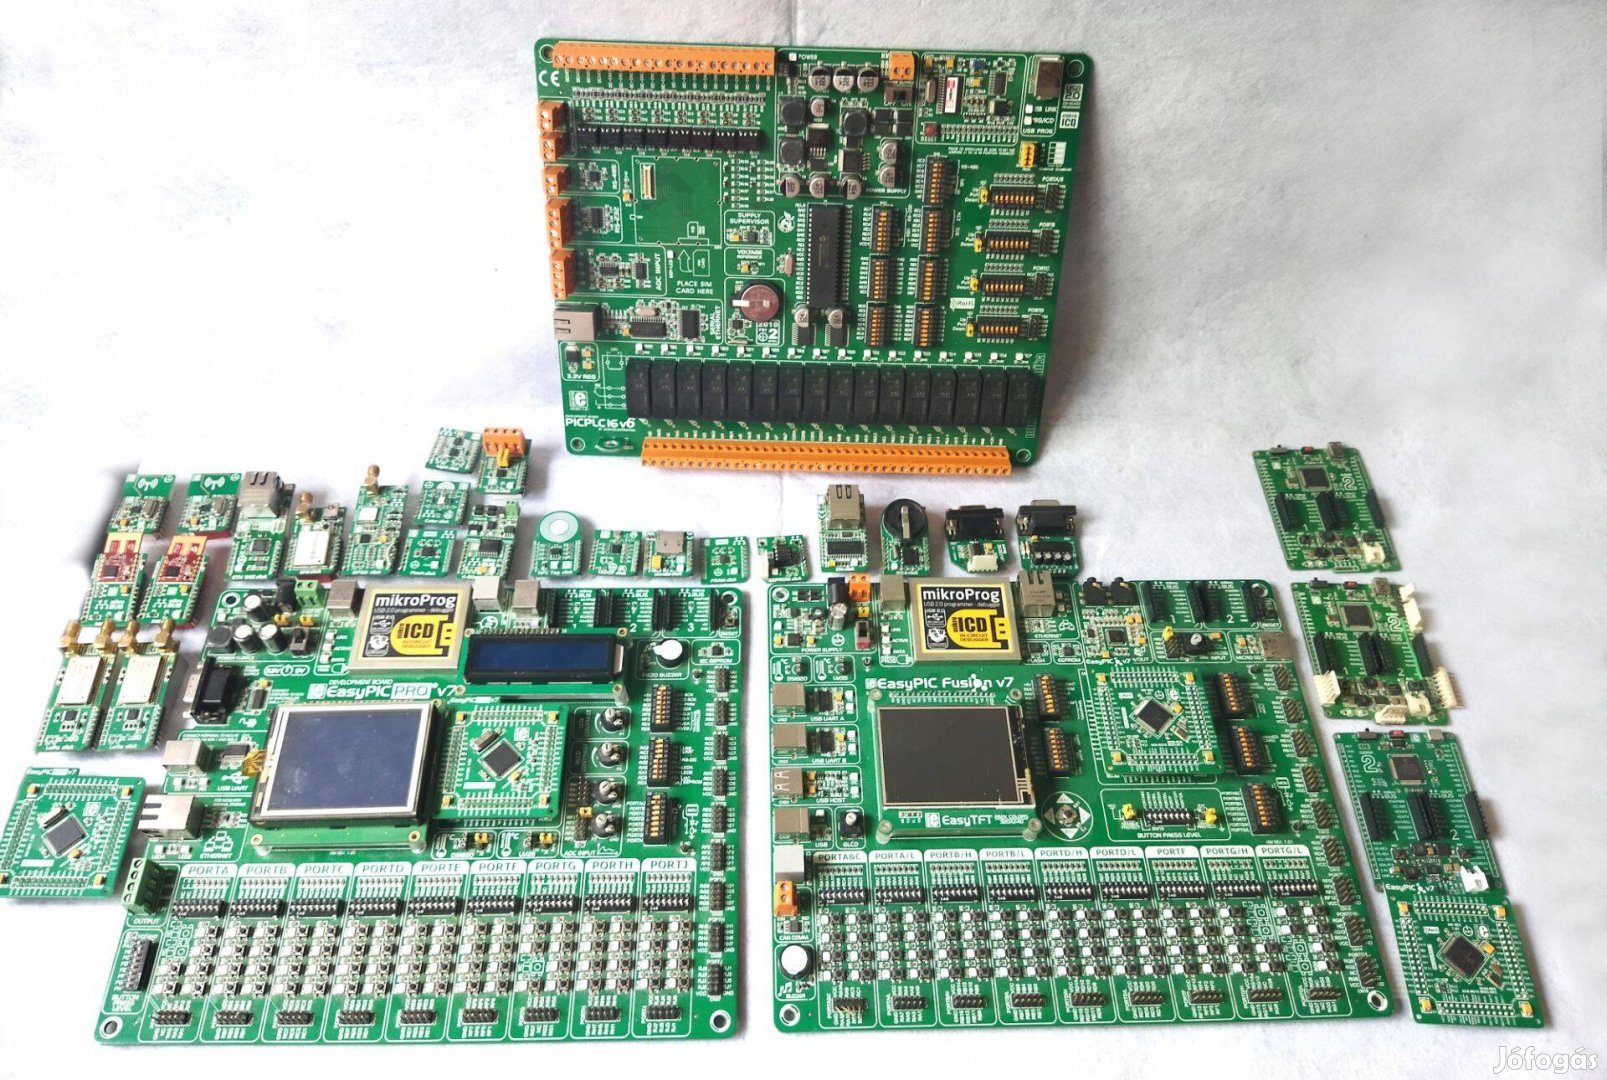 Mikrokontroller fejlesztőeszközök egy készletben eladók